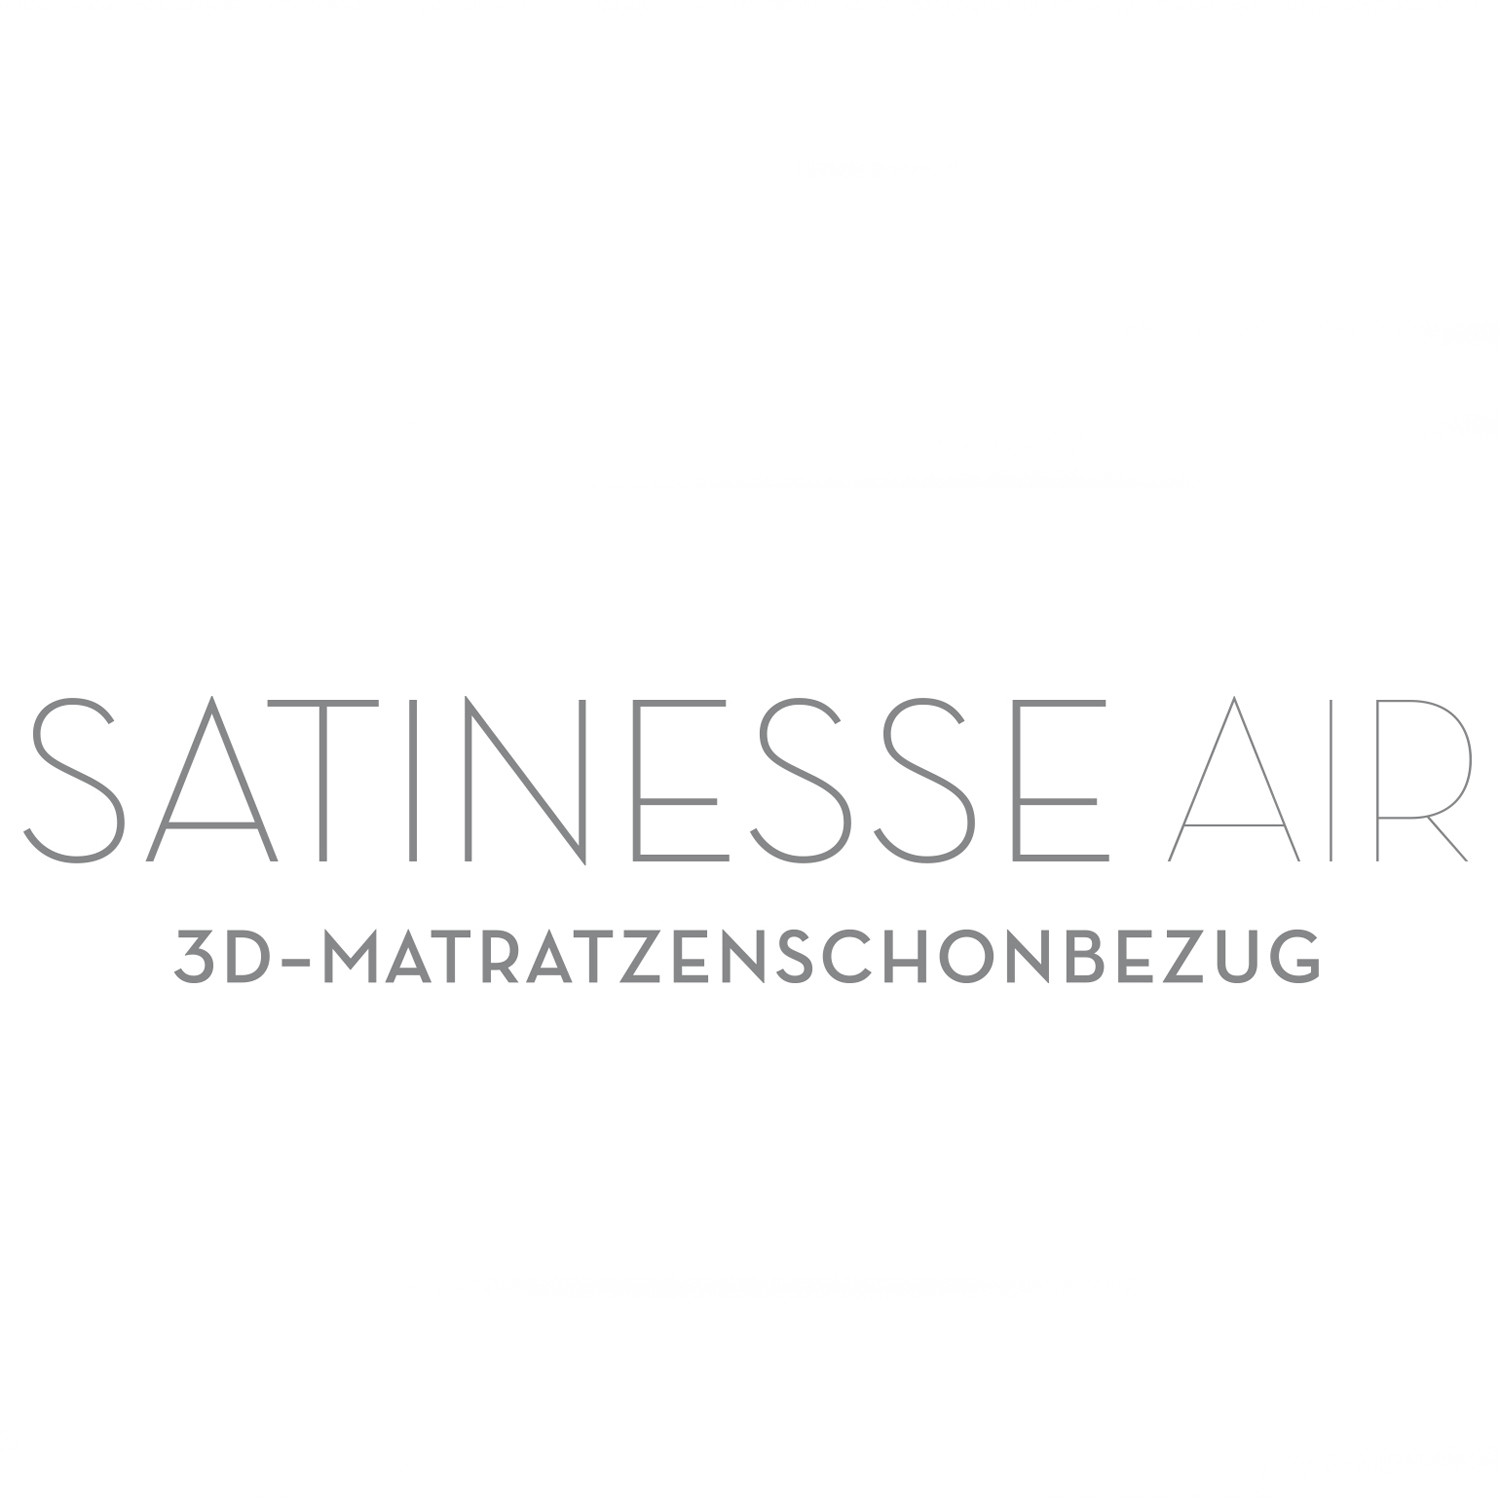 FORMESSE Matratzenschoner Satinesse Air Silver wollweiß 90x200cm